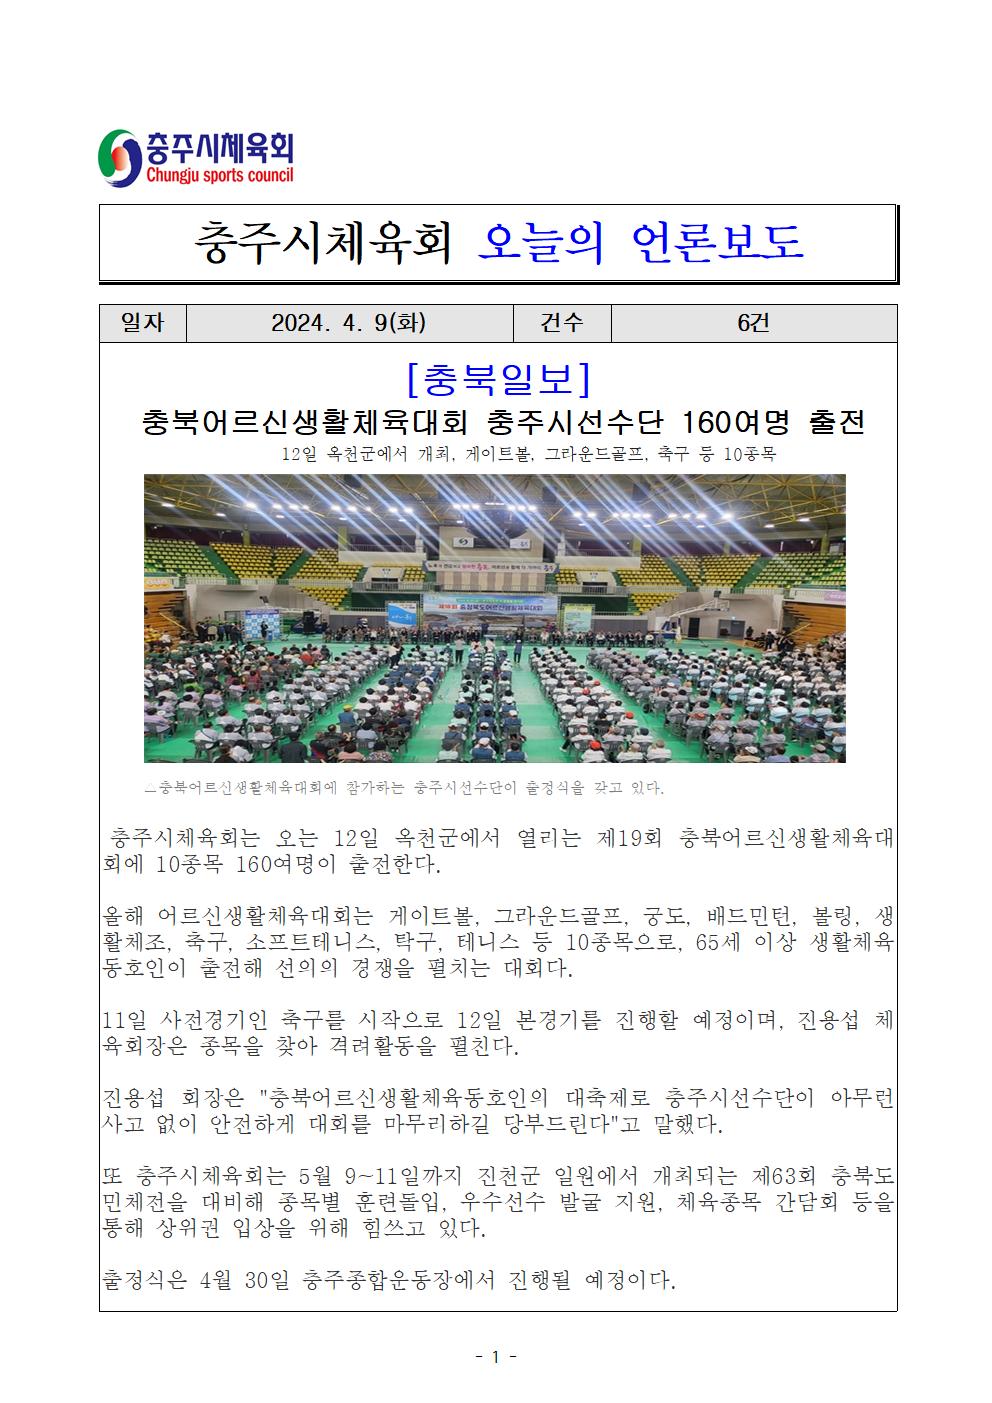 충북일보(24. 4. 9) 1.jpg